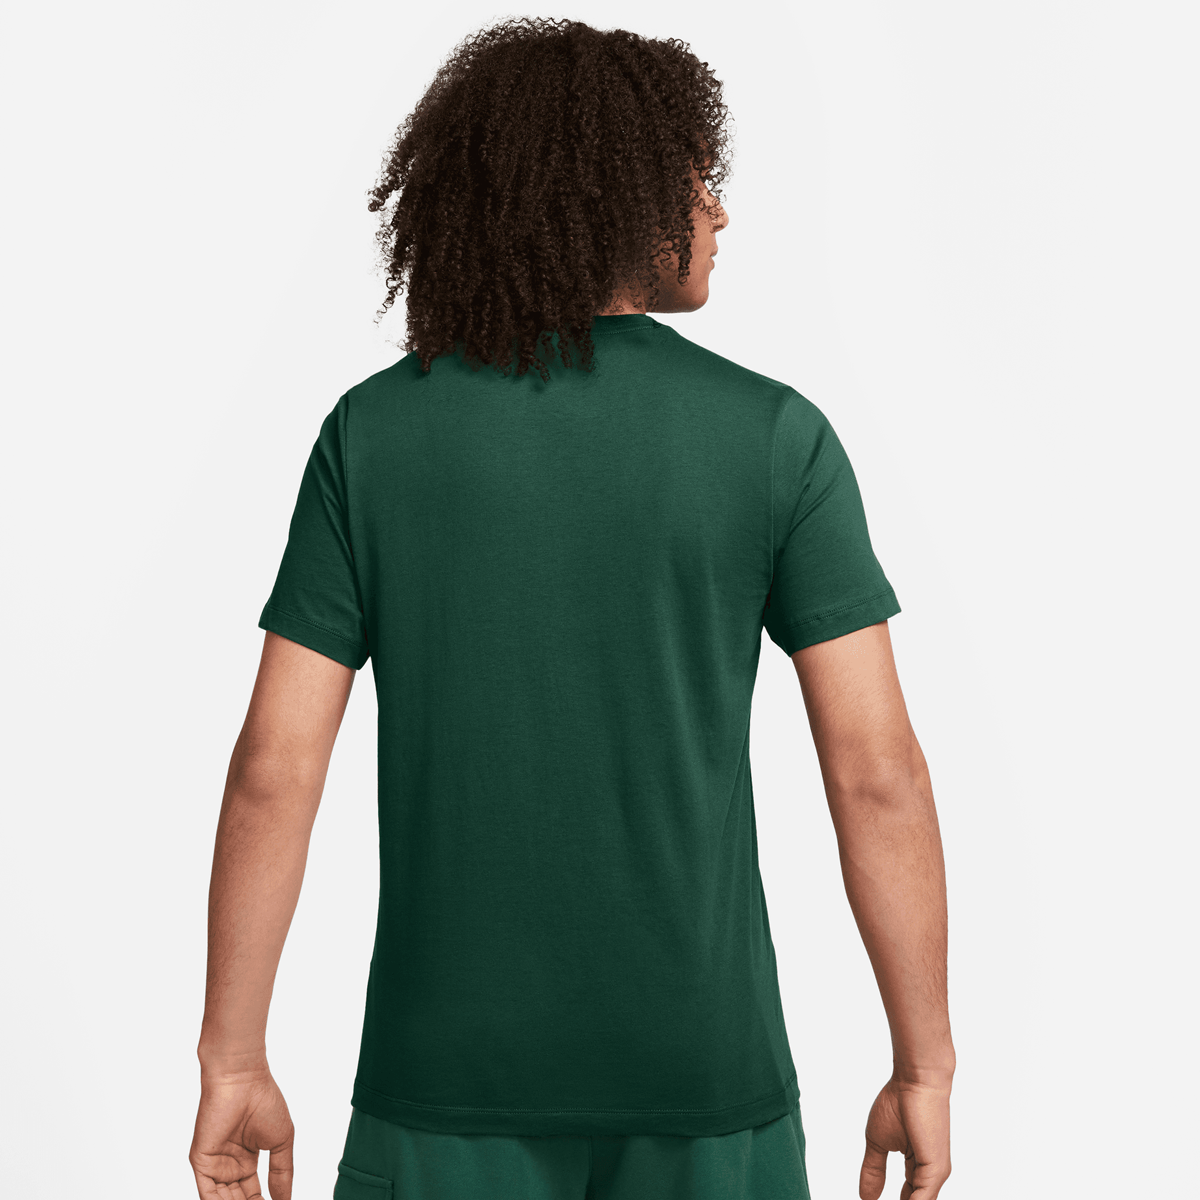 Nike Sportswear Just Do It T-shirt T-shirts Kleding fir maat: M beschikbare maaten:S M L